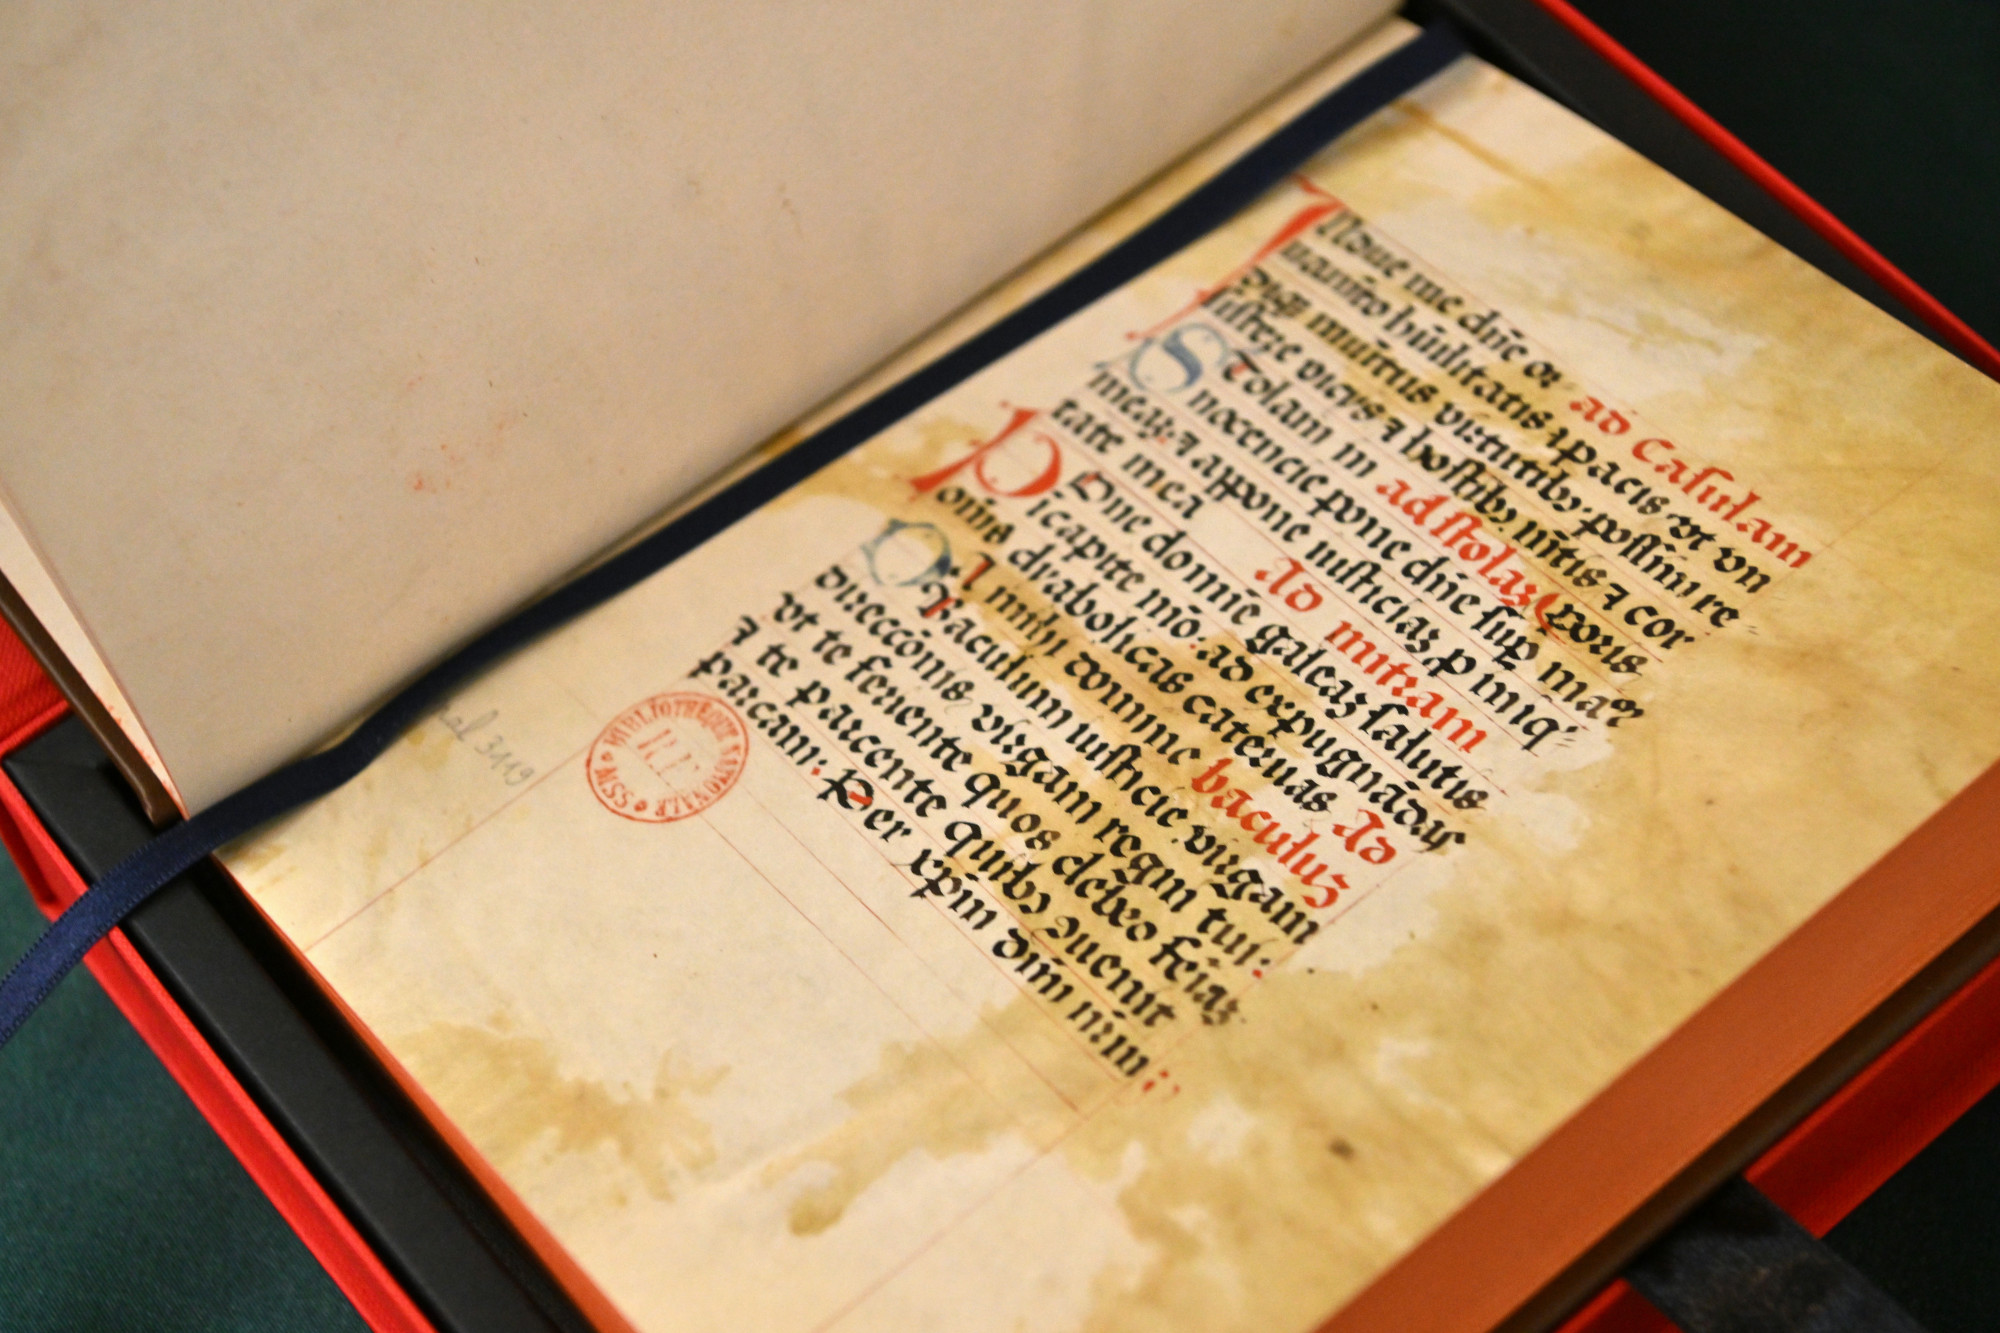 A Mátyás király udvarához tartozó Kálmáncsehi Domonkos 15. századi imakönyvének fakszimile kiadása a Nemzetstratégiai Kutatóintézetben tartott bemutatón